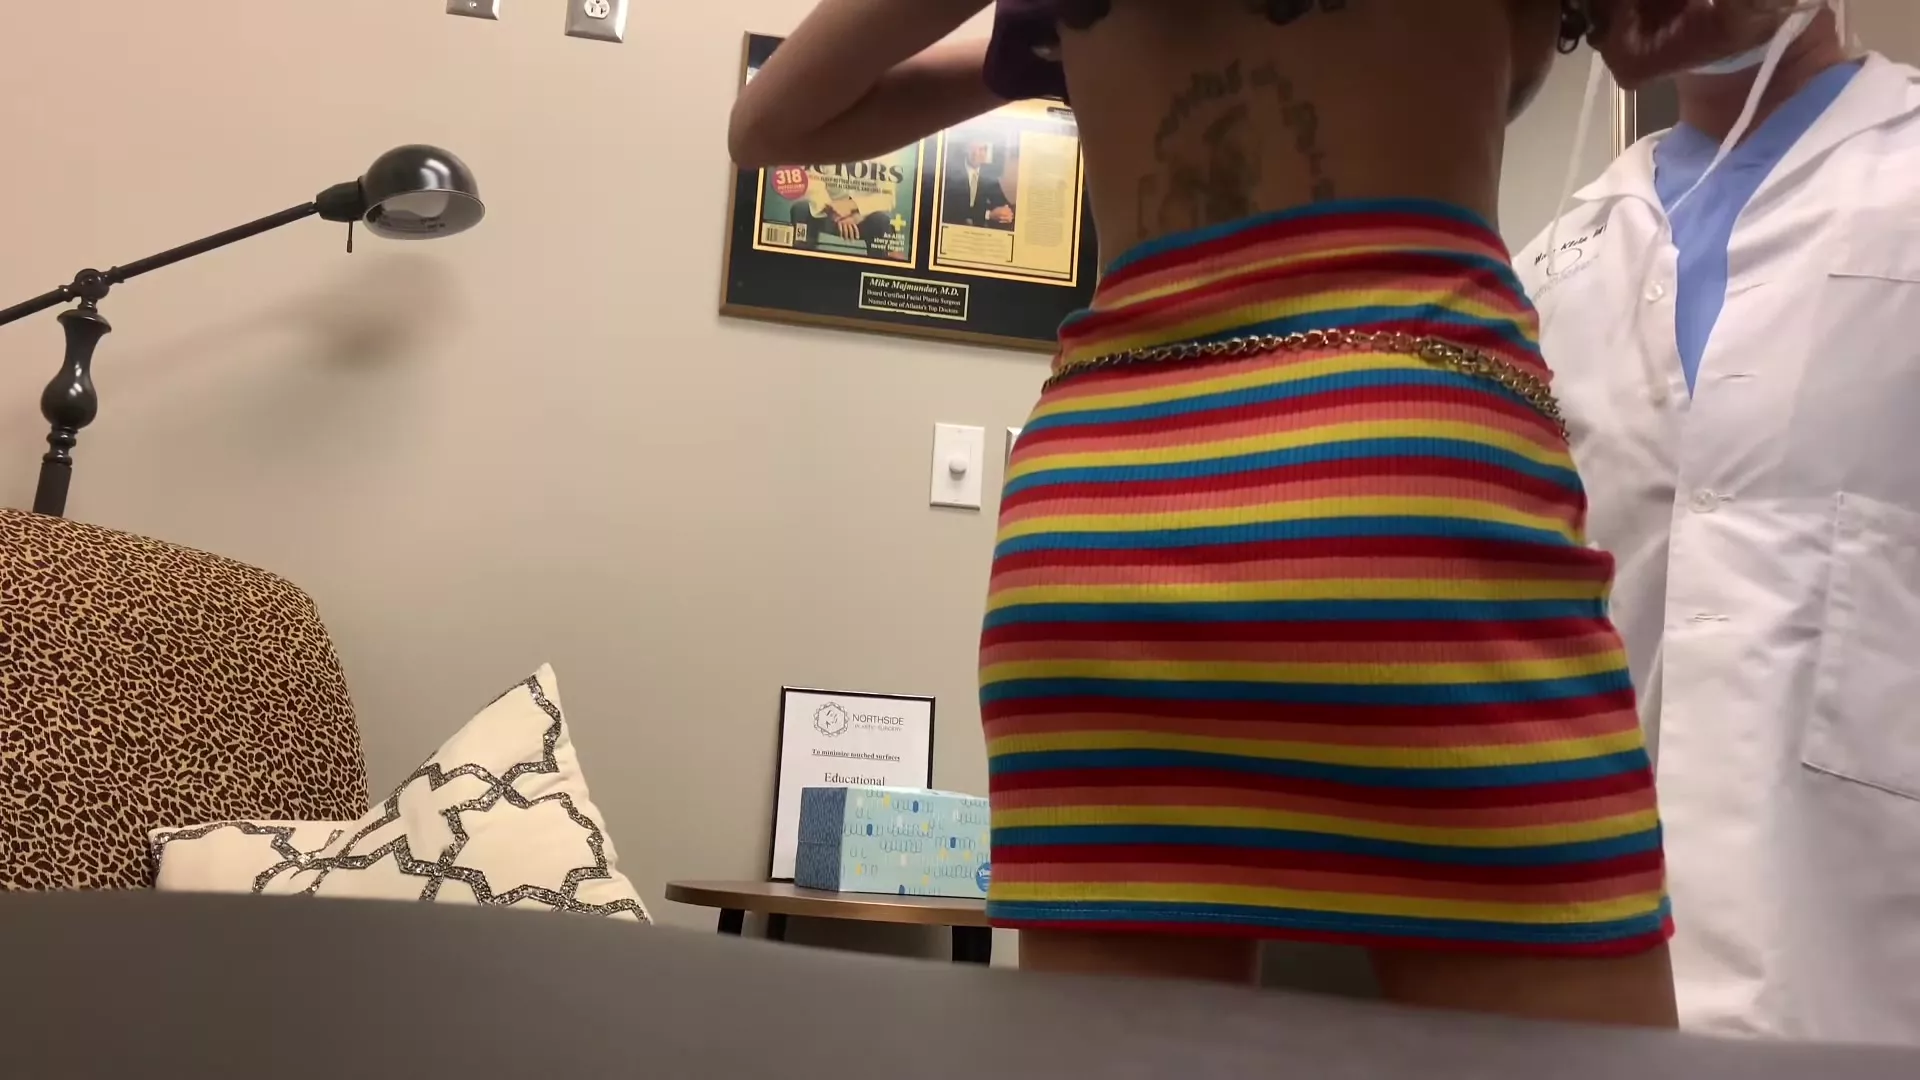 Sideboob slip @3:01, Nude Video on